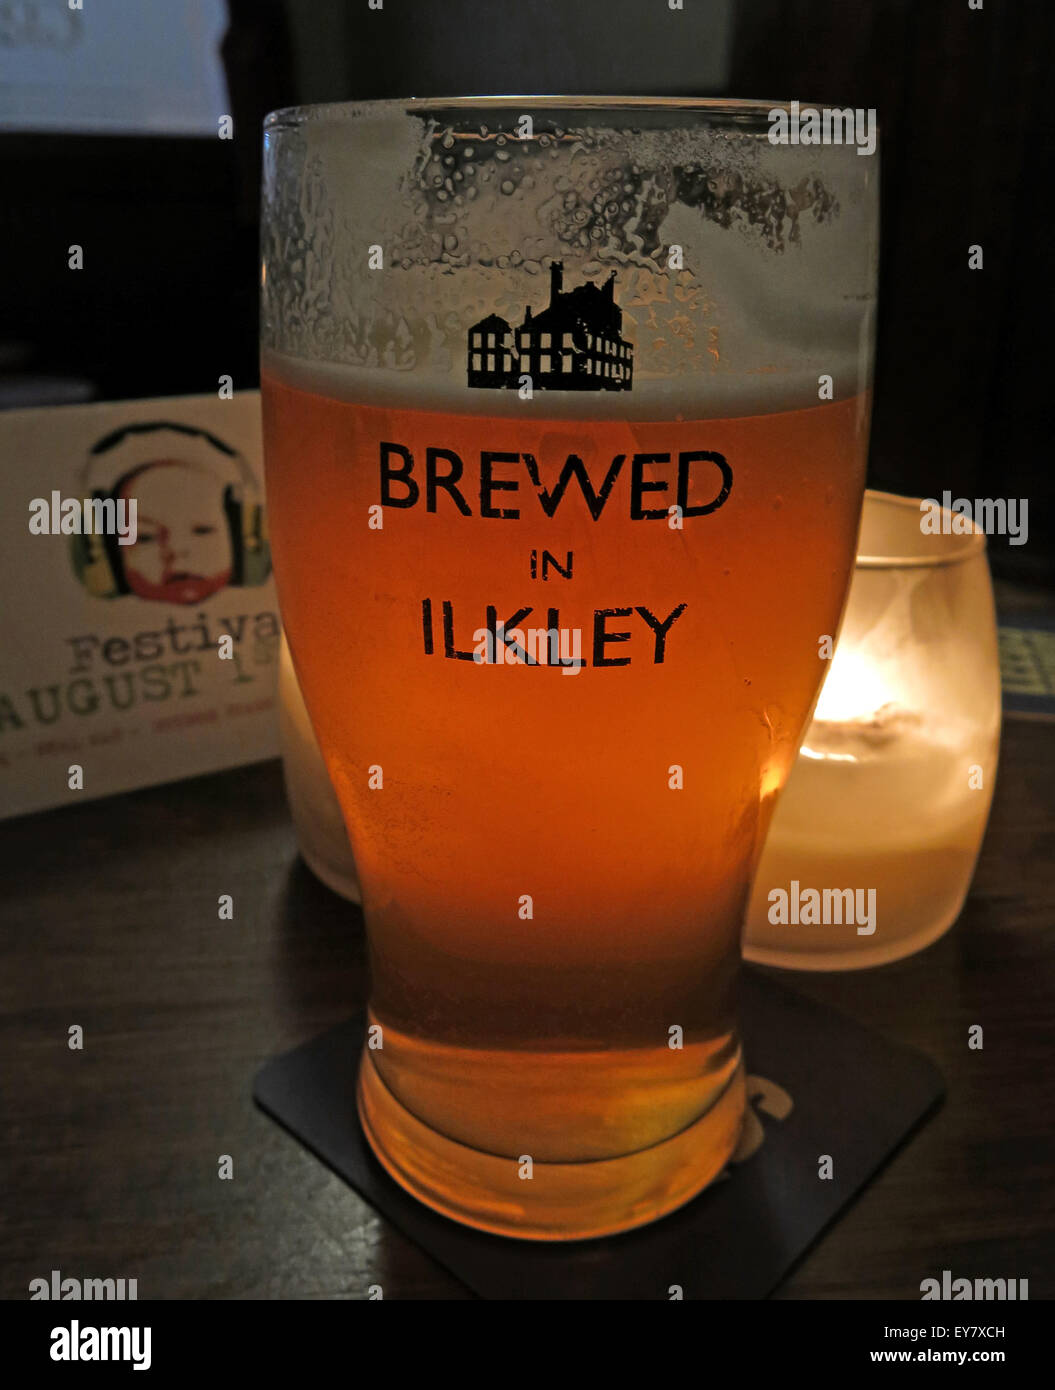 Verre à bière, brassée à Ilkley,logo Craft Brewery, West Yorkshire, Angleterre Banque D'Images